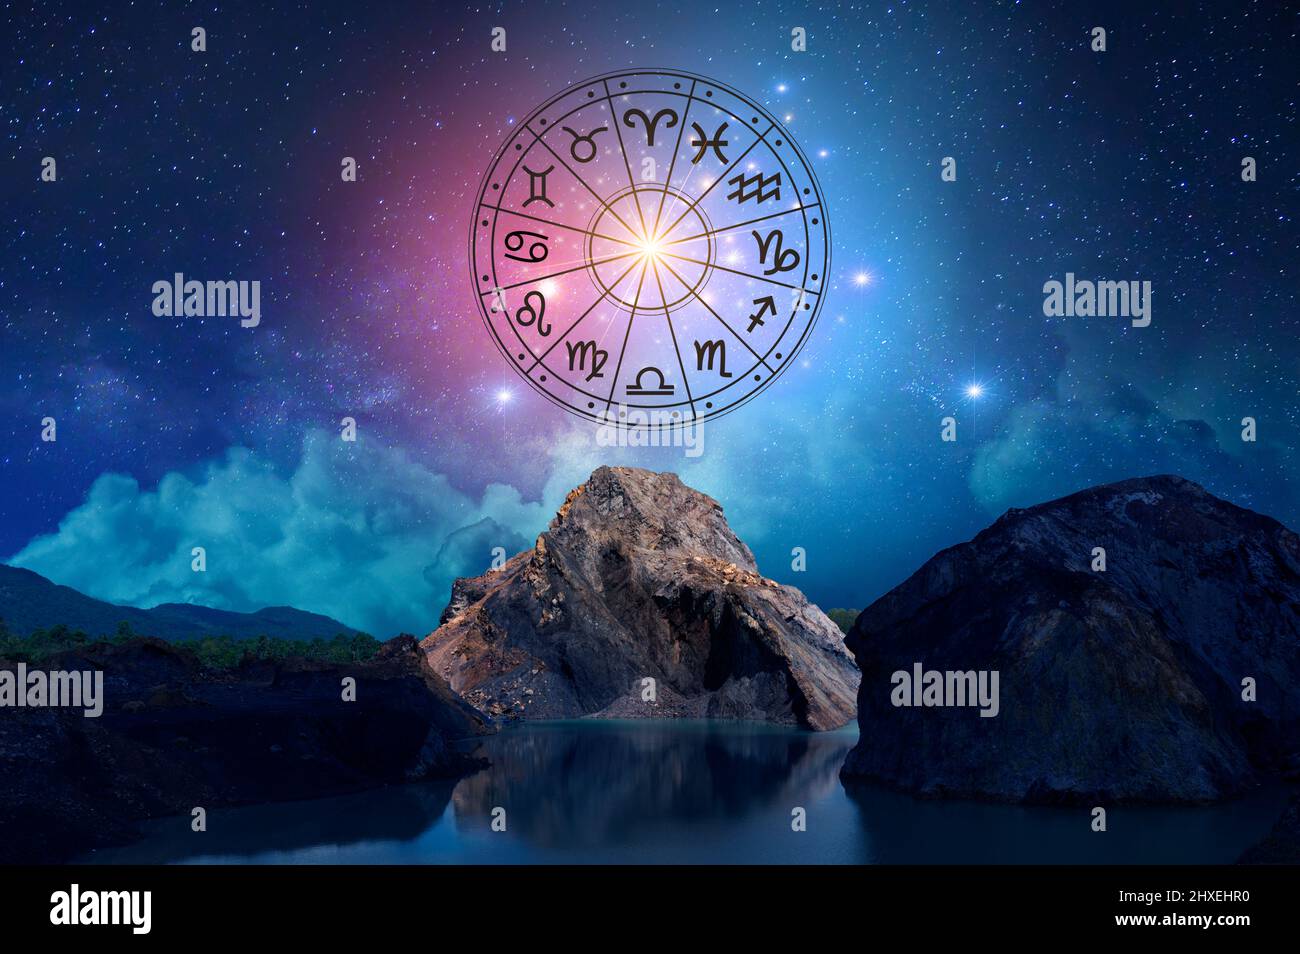 Segni zodiacali all'interno del cerchio oroscopo. Astrologia nel cielo con tante stelle e lune Astrologia e oroscopi concept Foto Stock